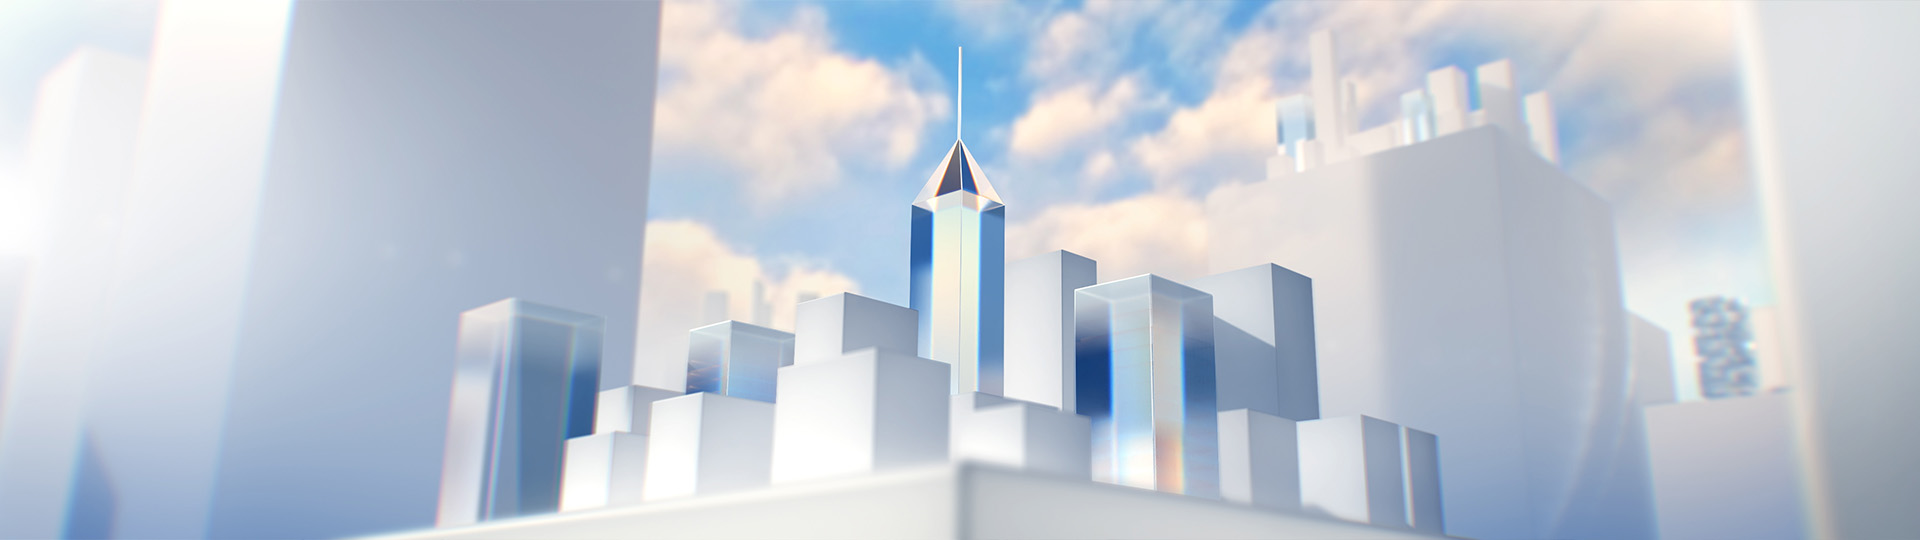 Buildings final 3D render